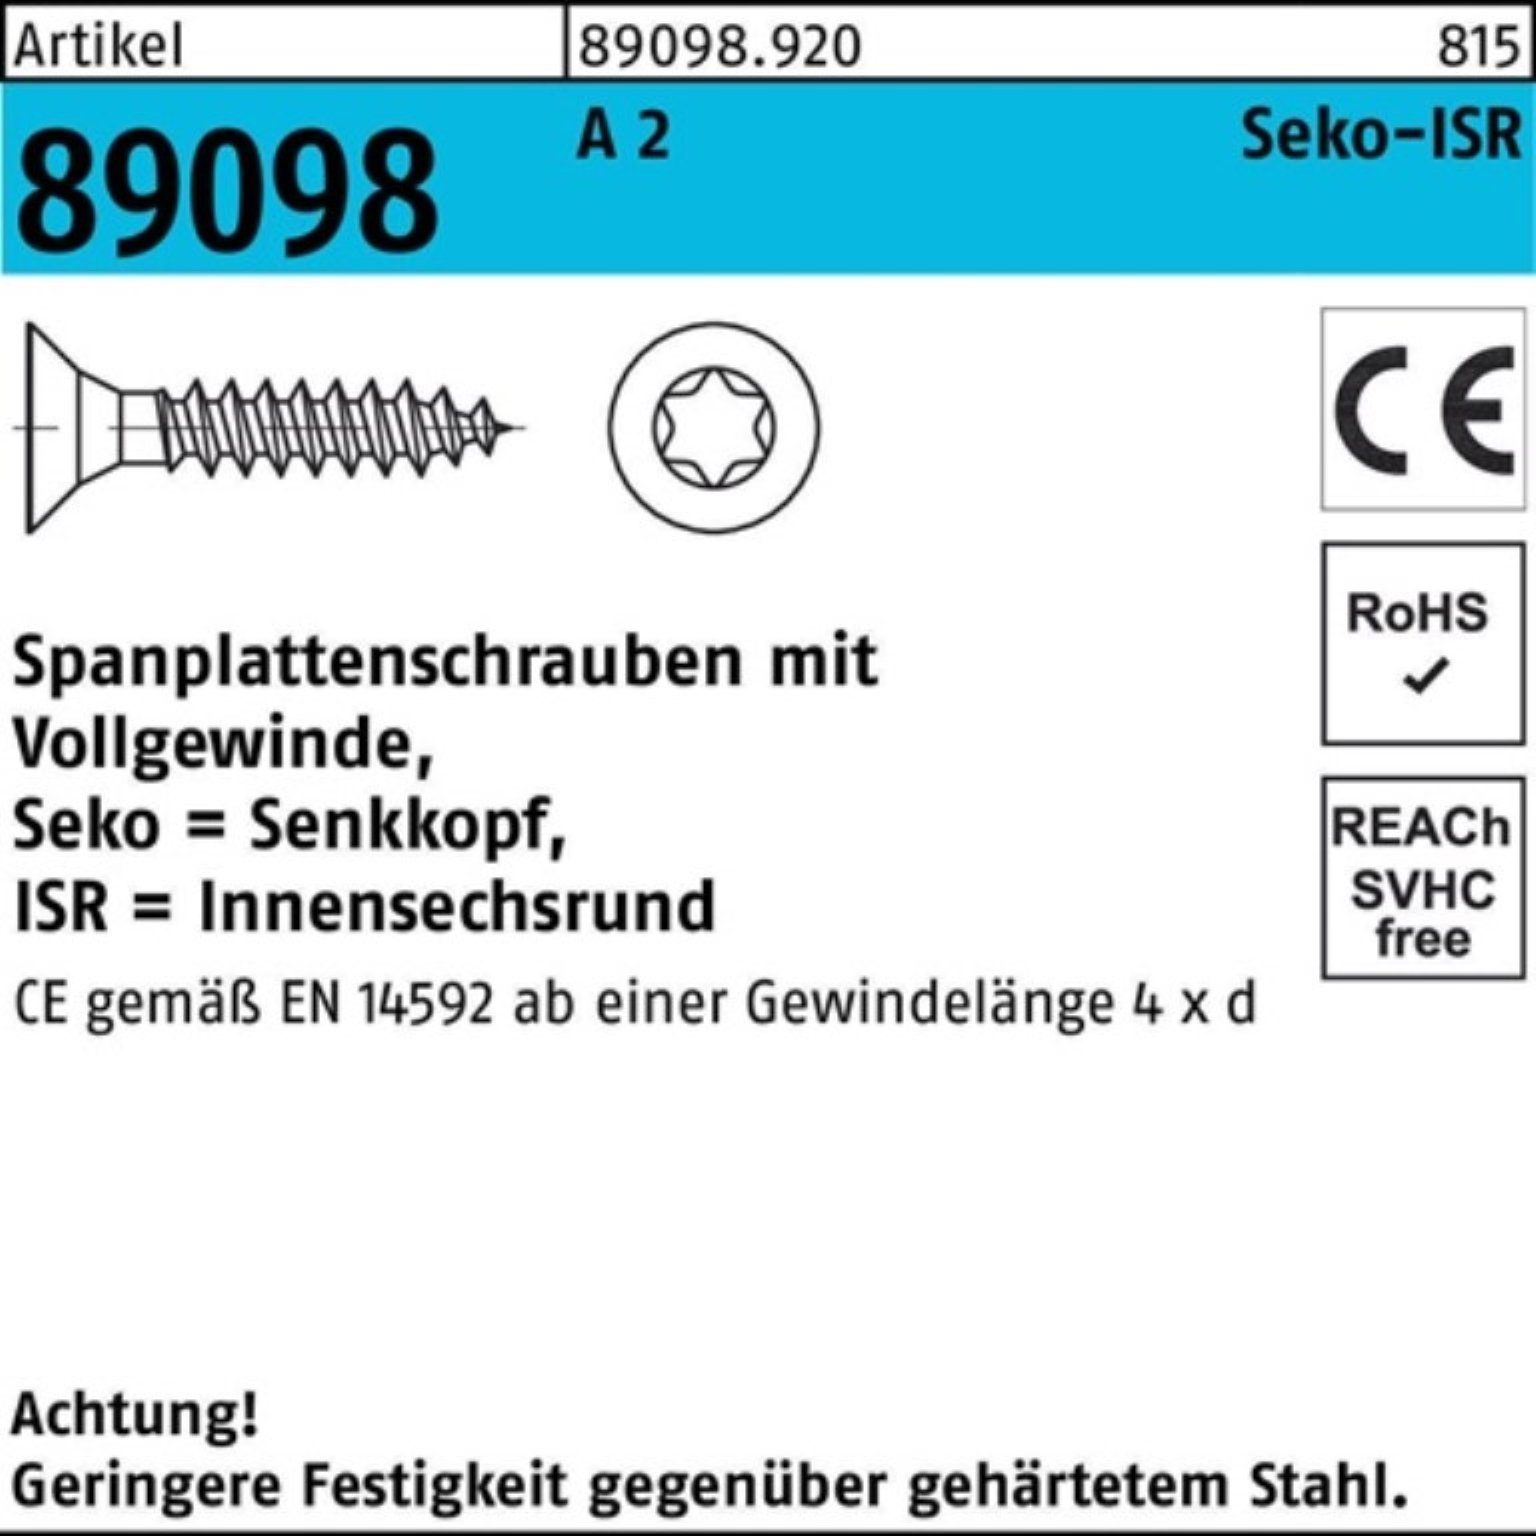 Reyher Spanplattenschraube 1000er Pack Spanplattenschraube R 89098 SEKO ISR VG 3,5x 40-T10 A 2 10